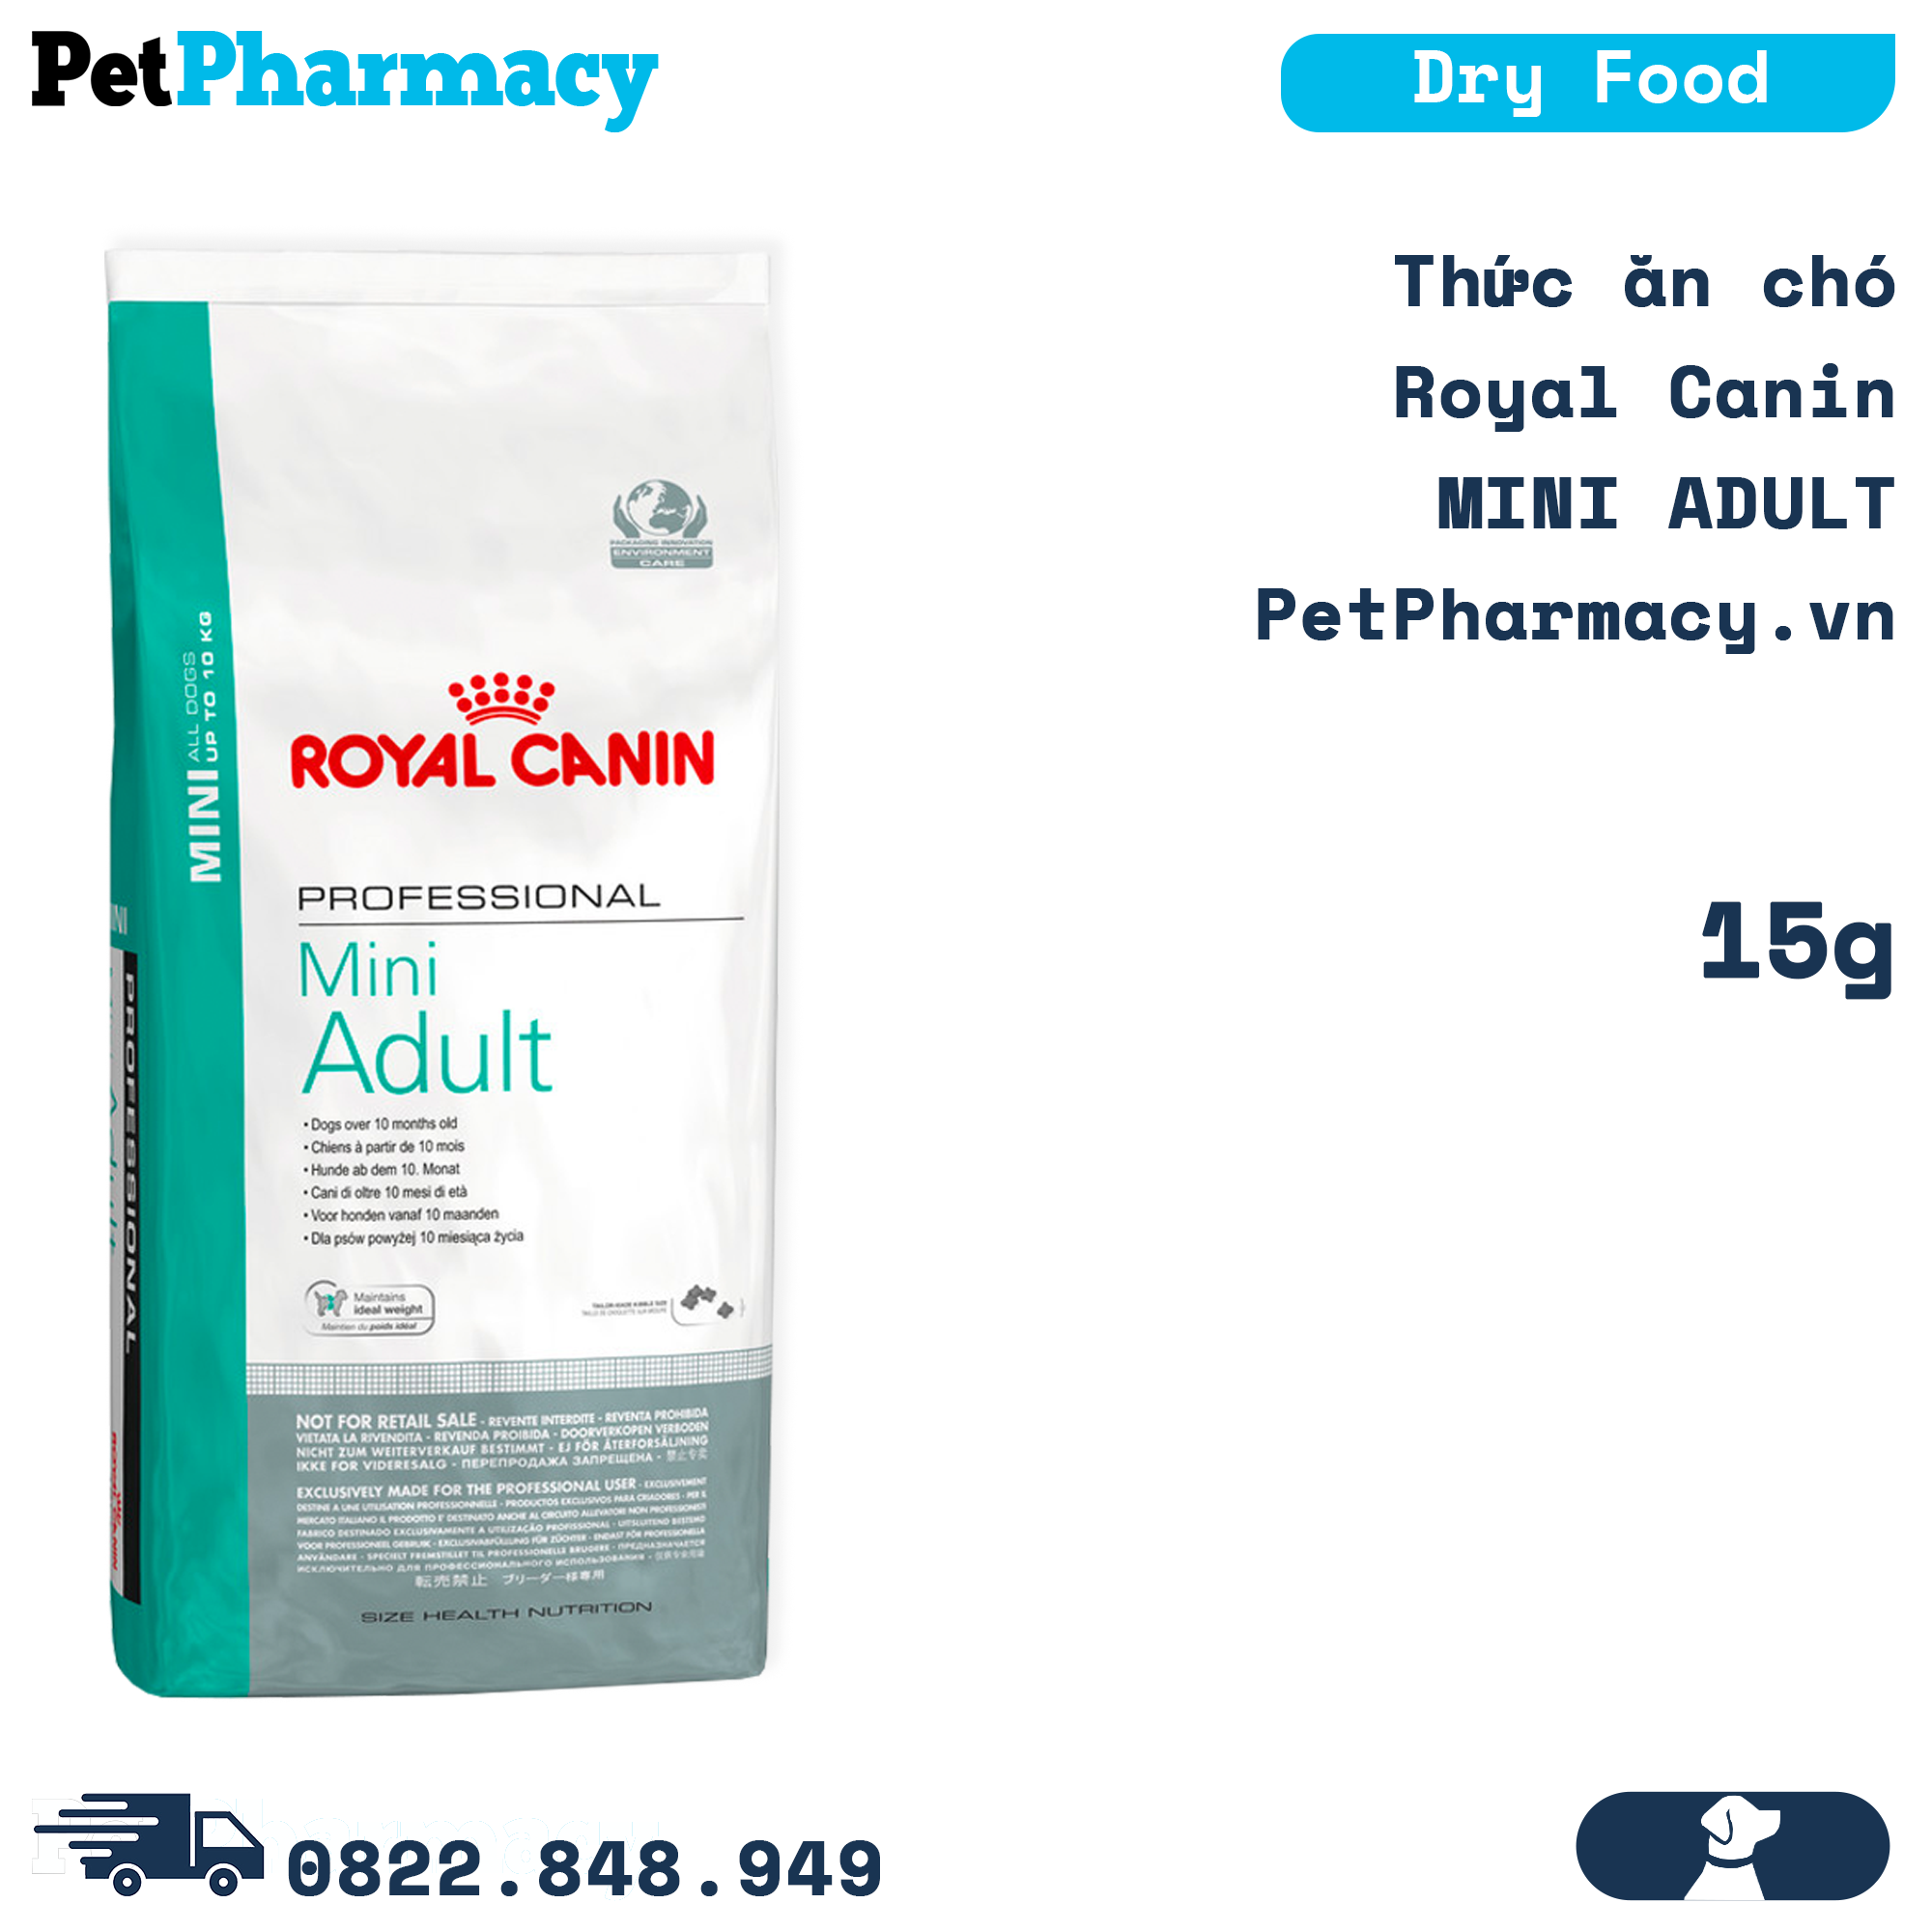 Thức ăn chó Royal Canin MINI ADULT 15kg - PetPharmacy – PetPharmacy.vn -  Online Pet Pharmacy Việt Nam